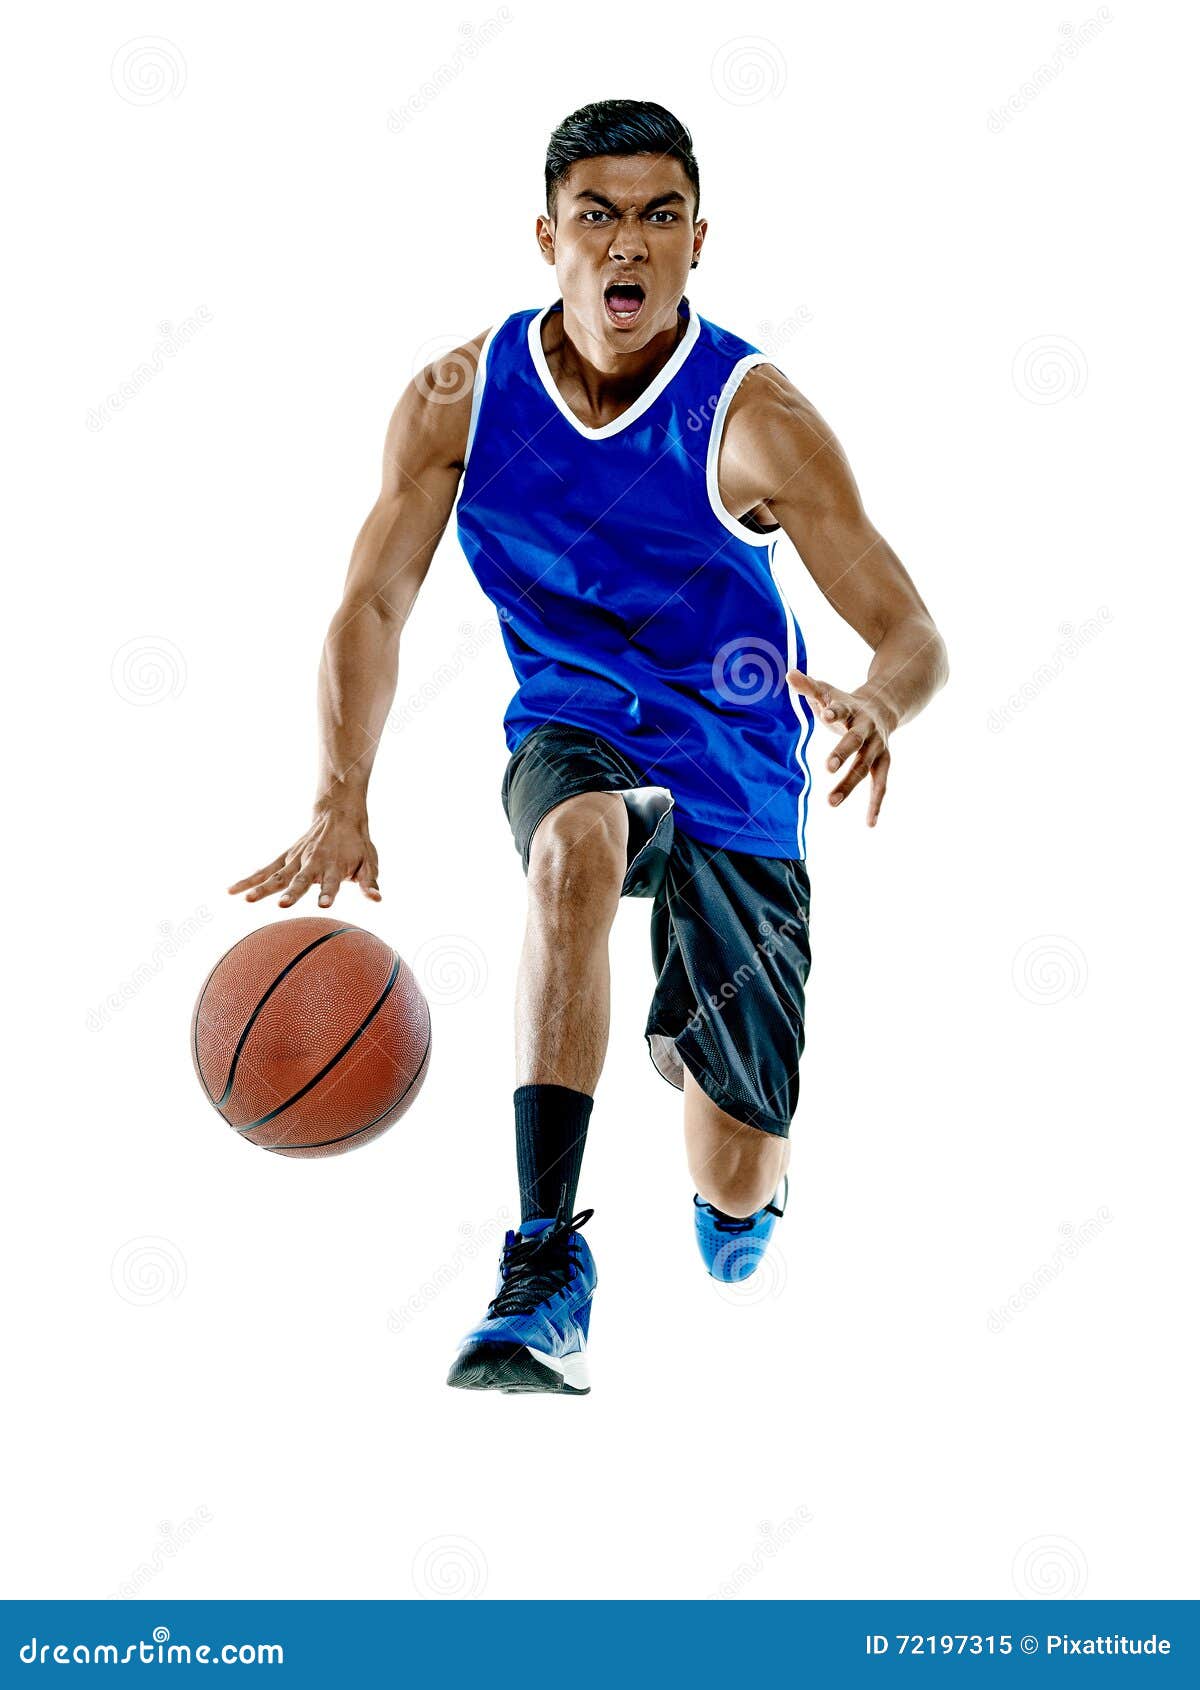 年轻蓝球运动员射击 库存照片. 图片 包括有 巴达维亚, 执行, 年轻, 体育场, 体育运动, 白种人 - 102599484